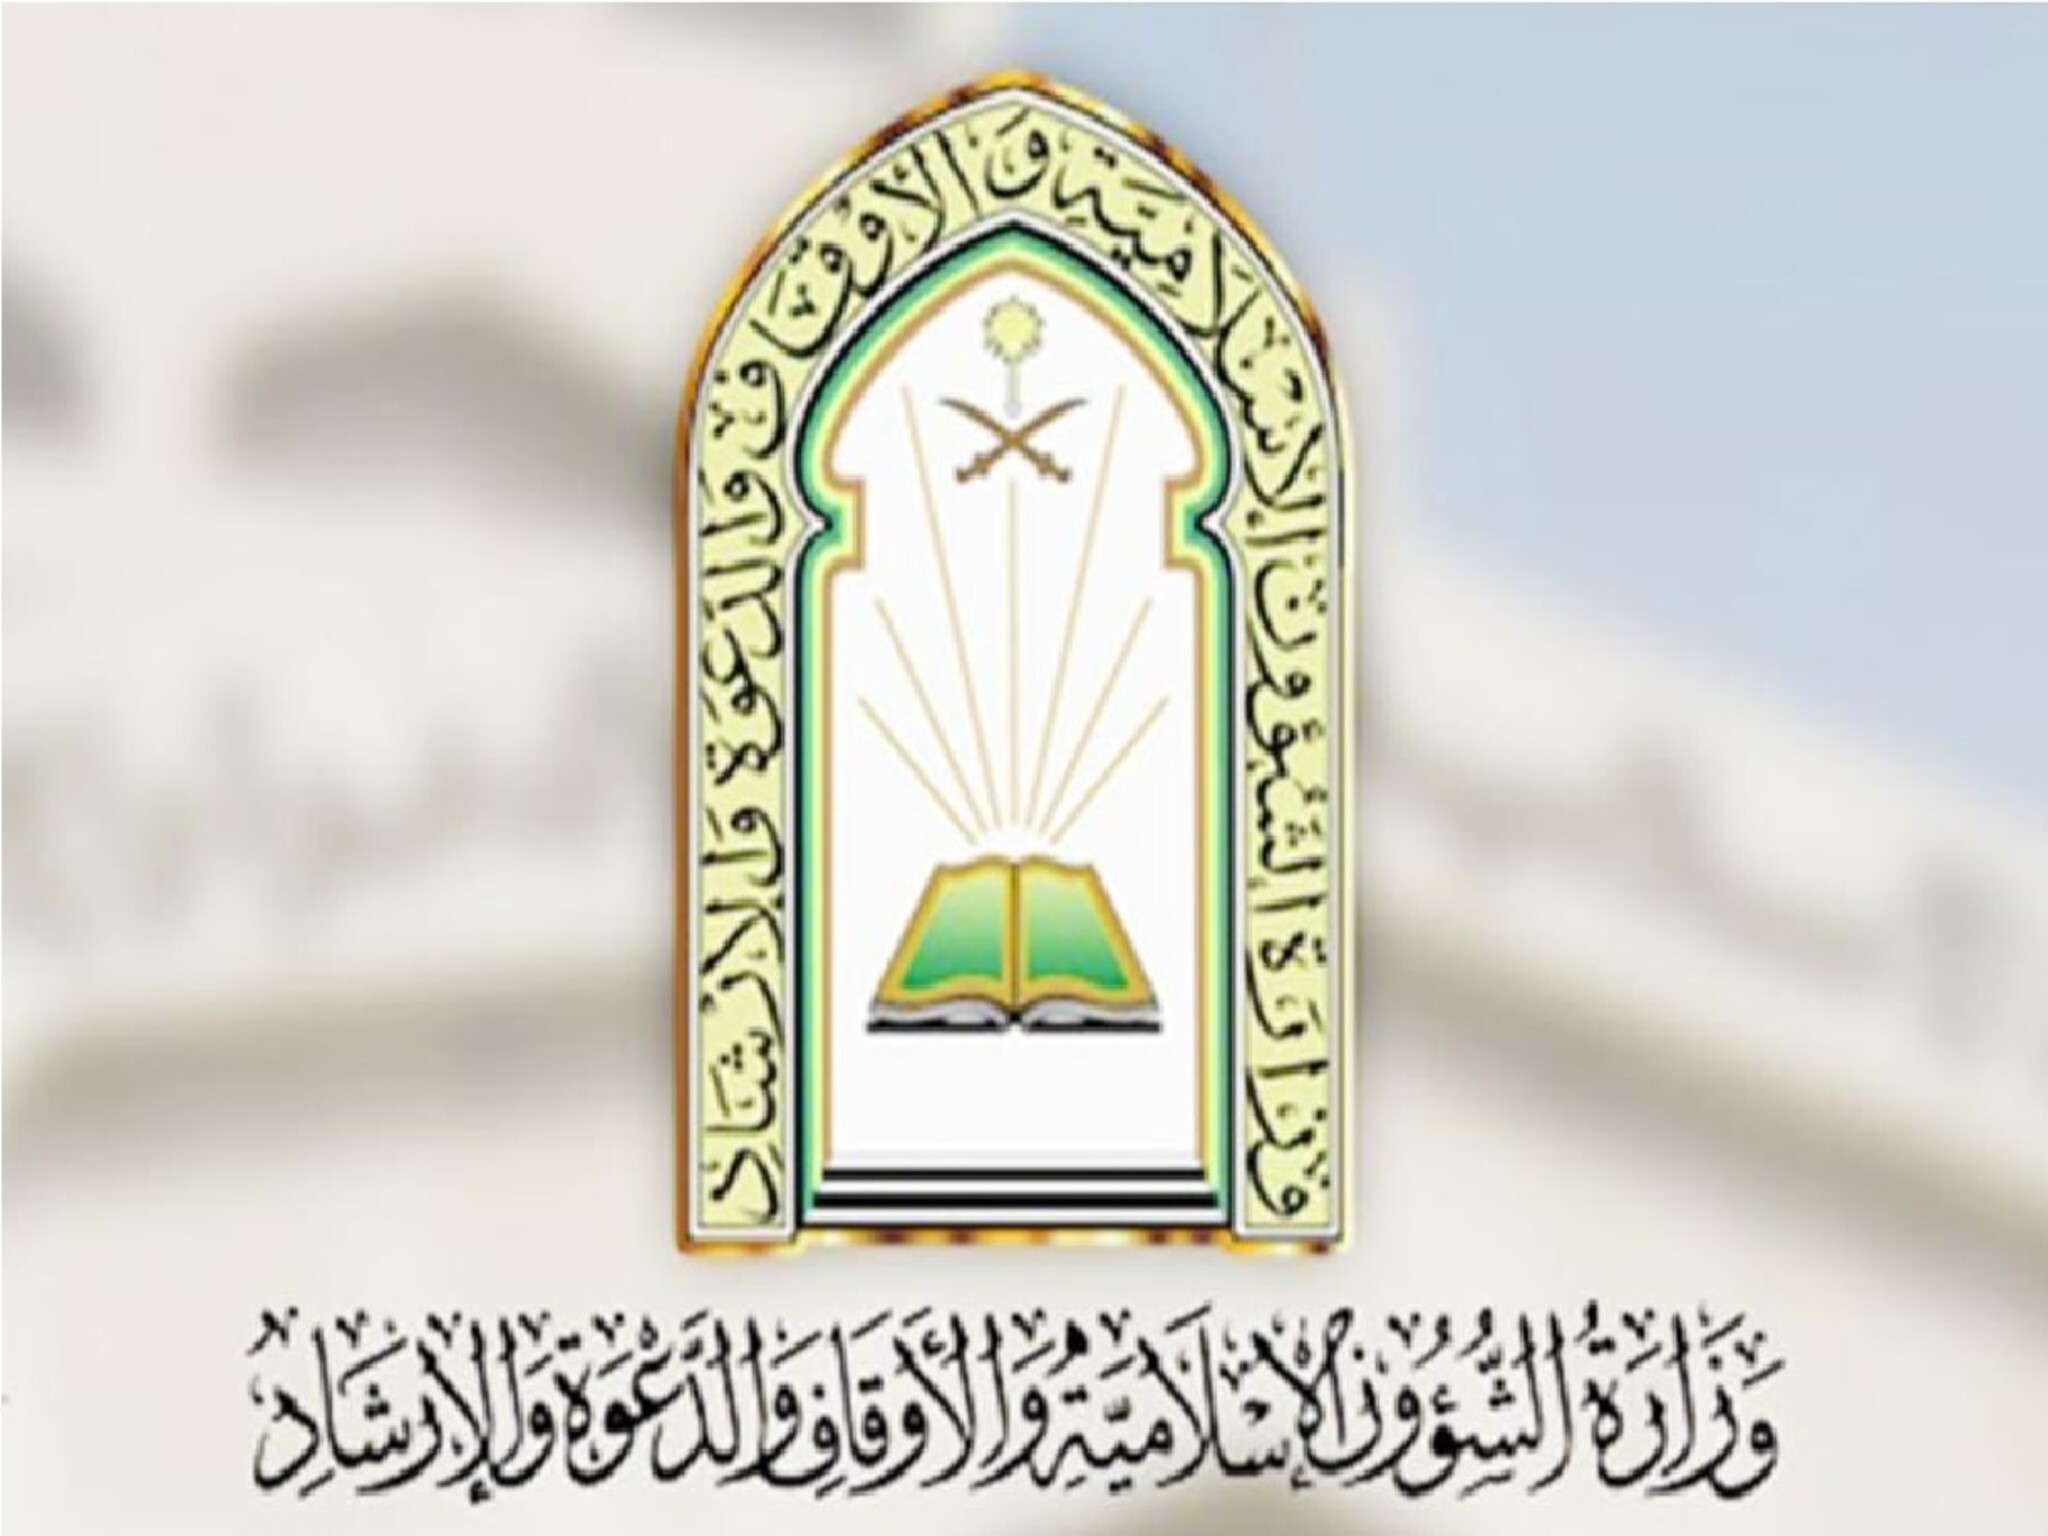 الشؤون الإسلامية تُعلن جاهزية مساجد الحجوزات في مكة المكرمة وتكشف التفاصيل